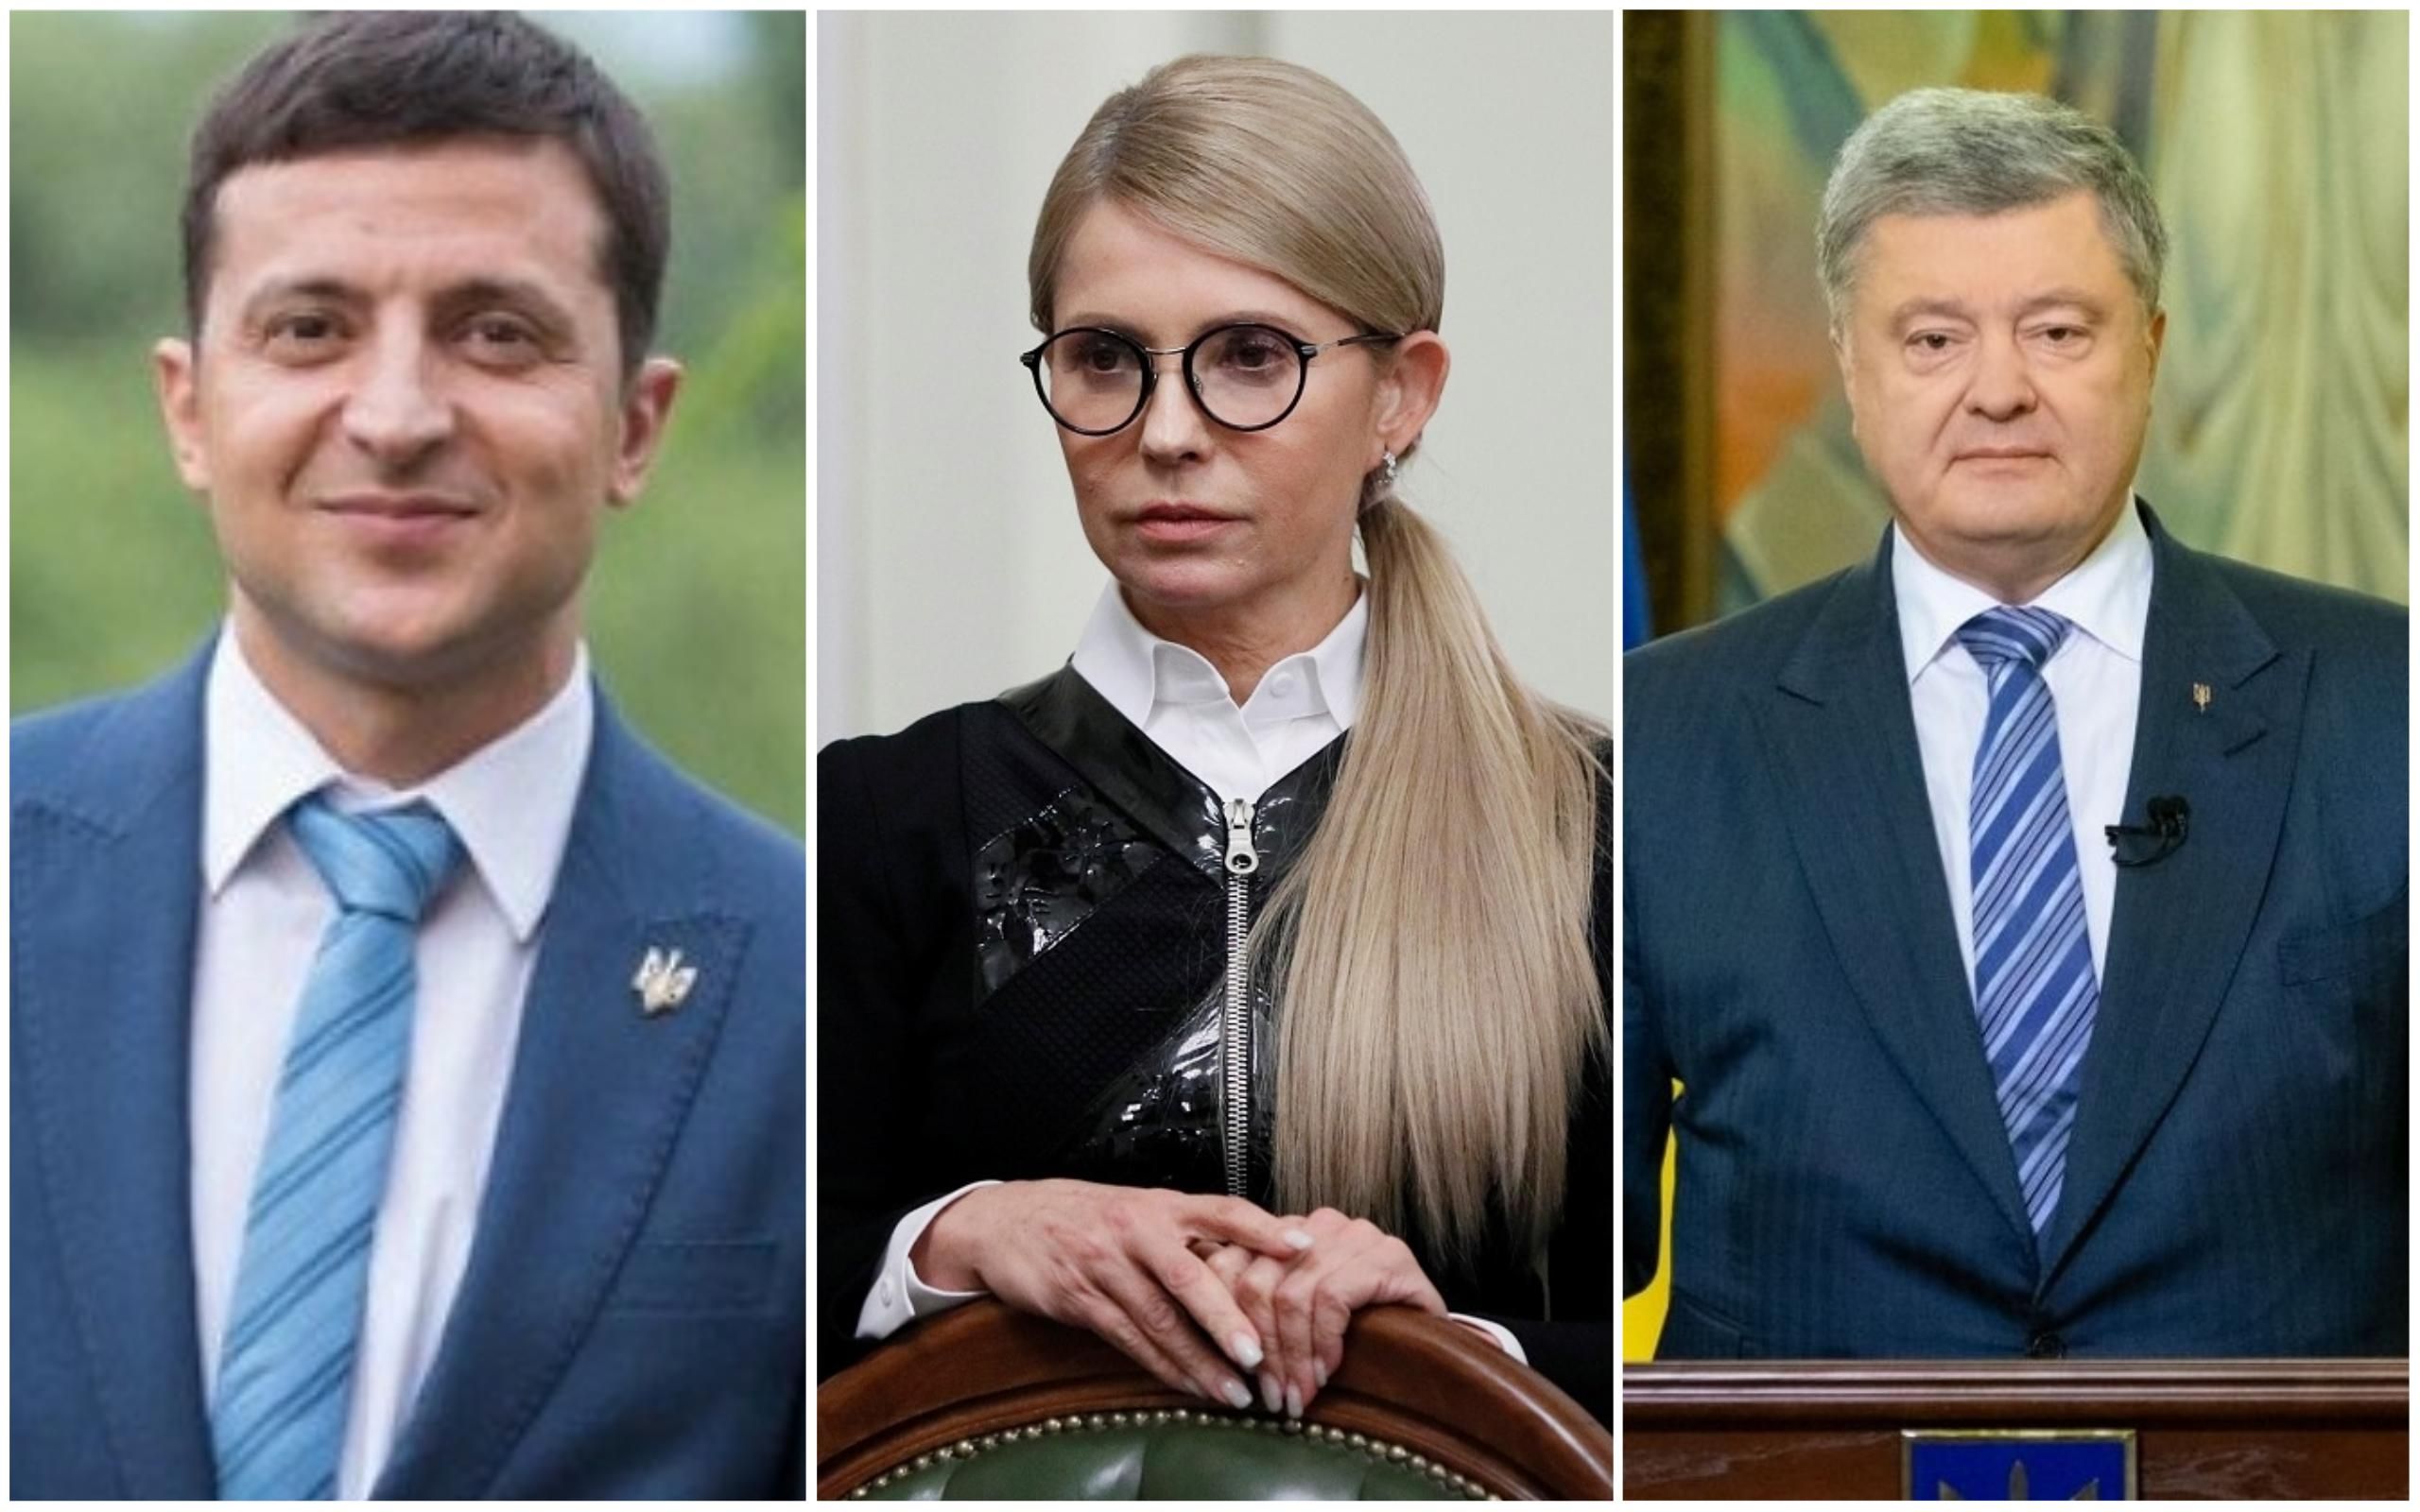 Тимошенко отчитала Зеленского за конфликт с Порошенко в прямом эфире 1+1 - видео